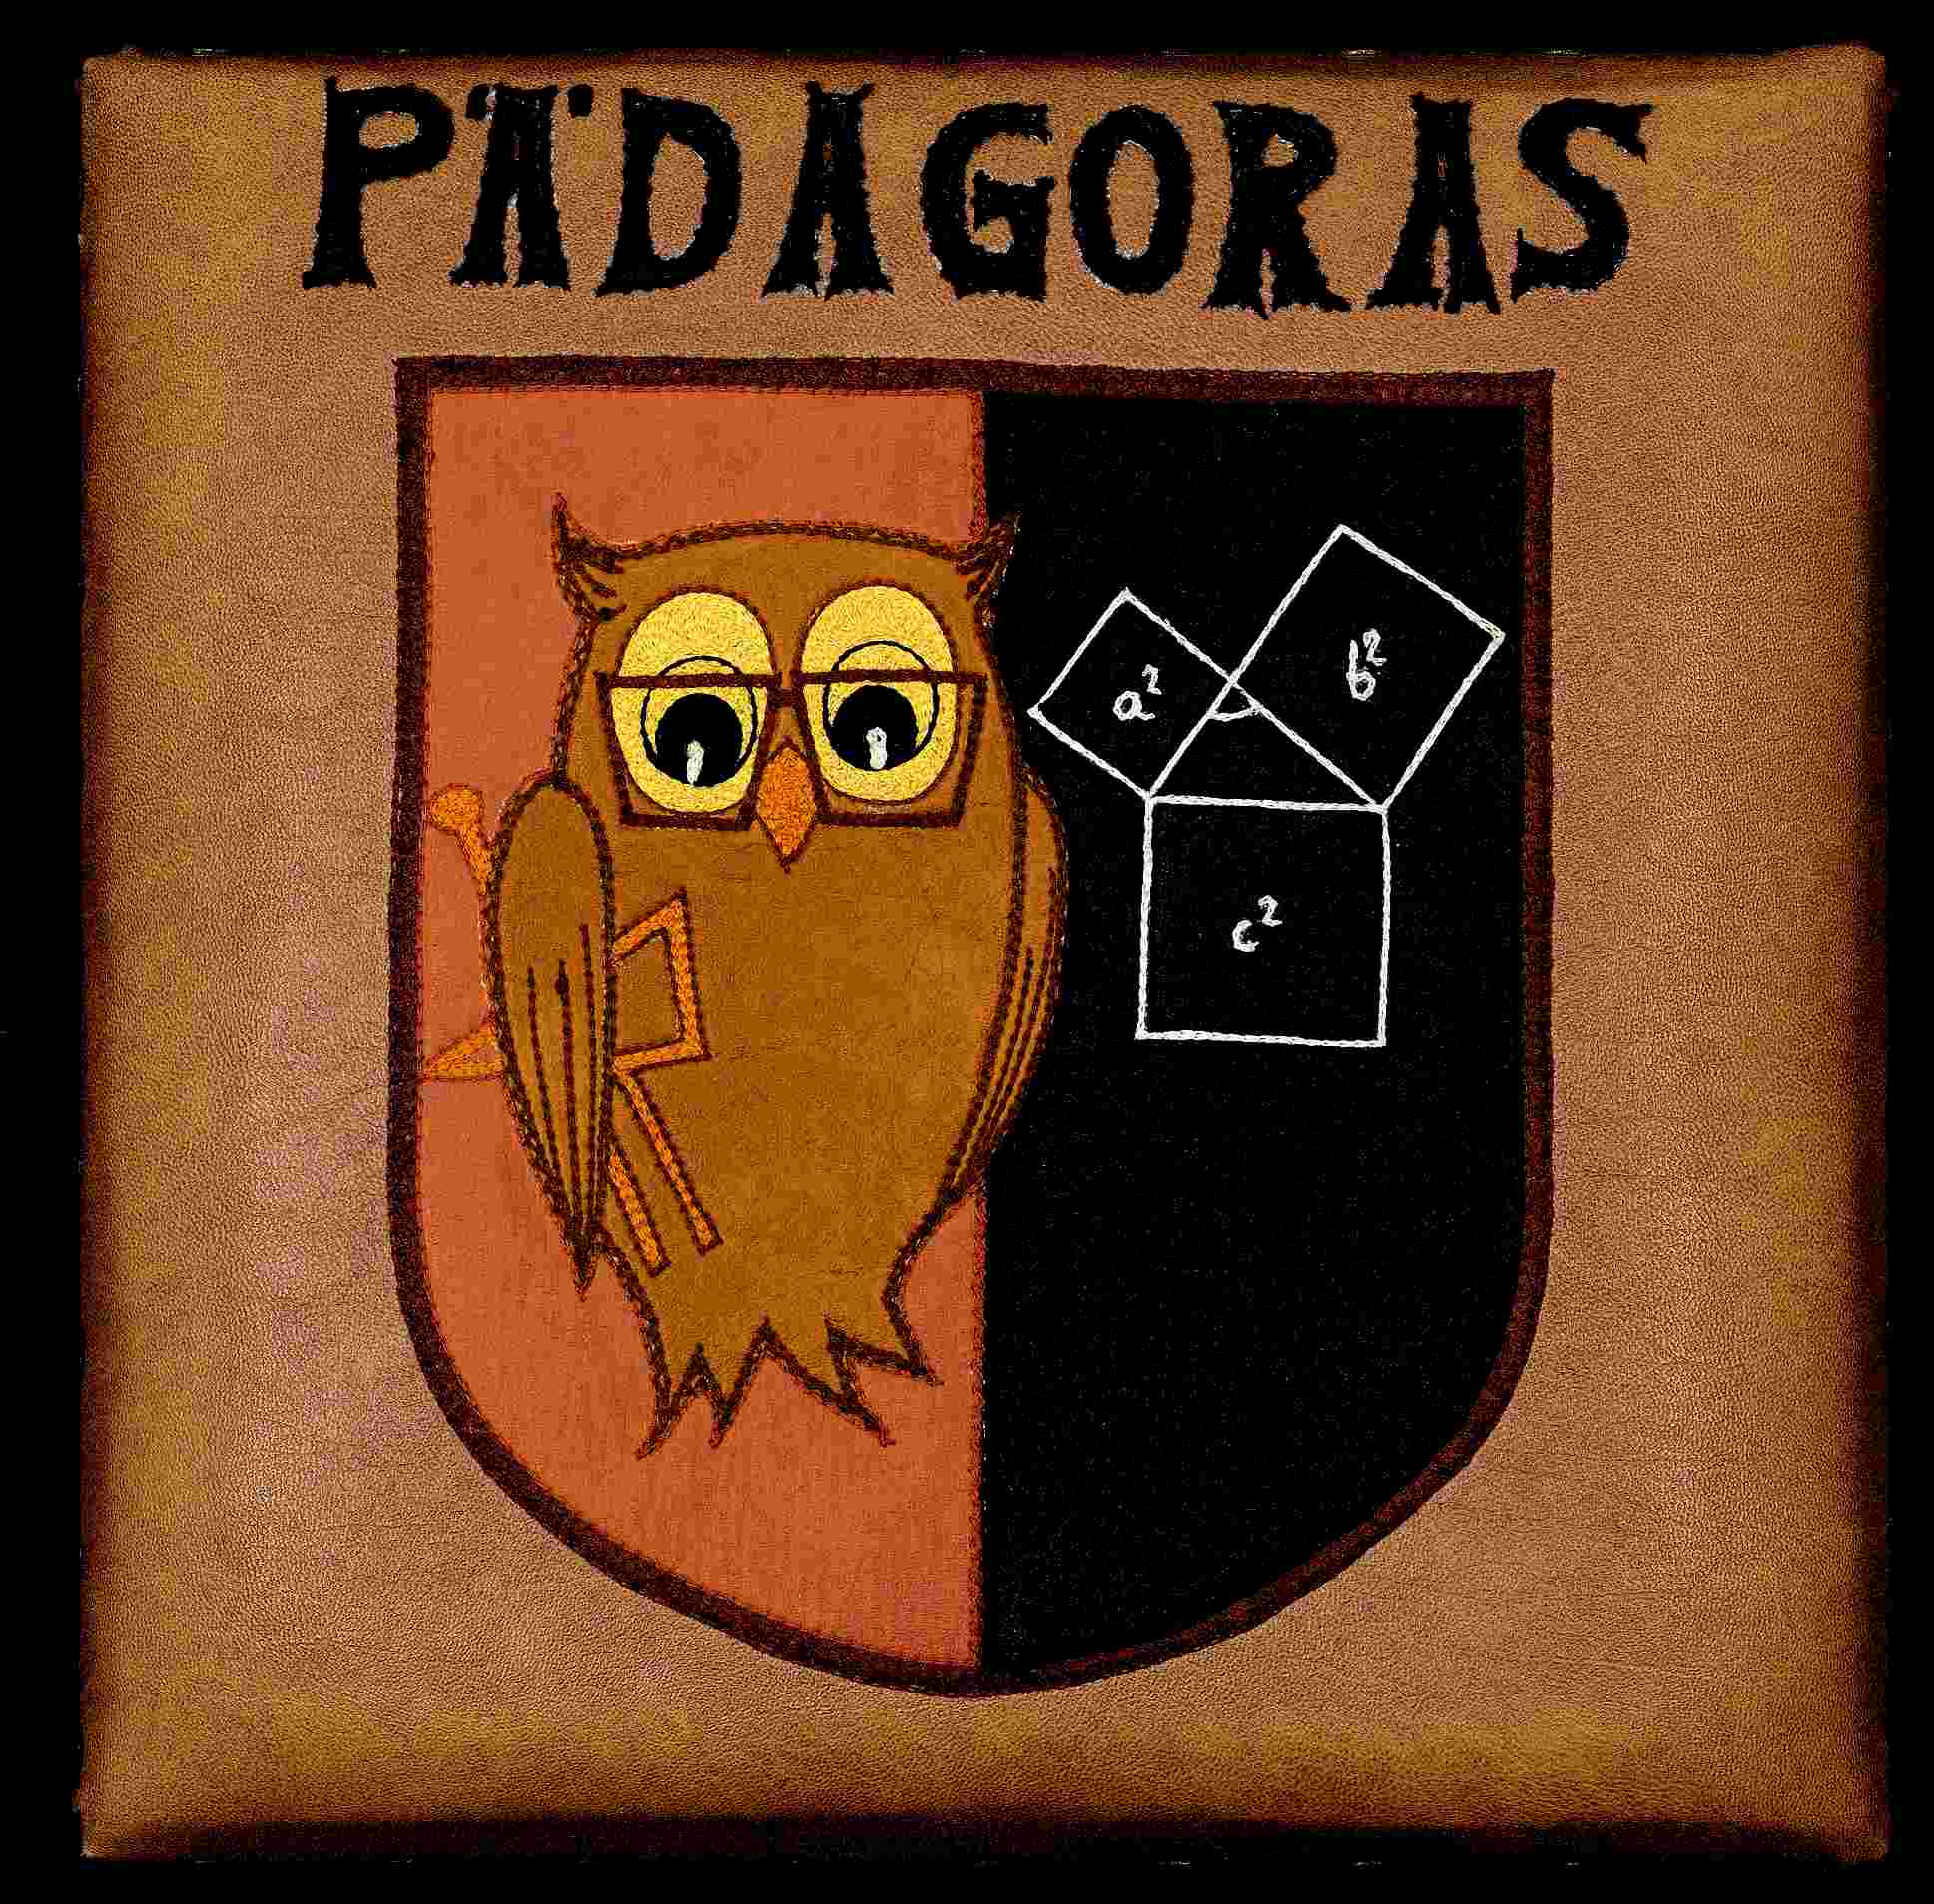 Wappen von Rt. Pdagoras